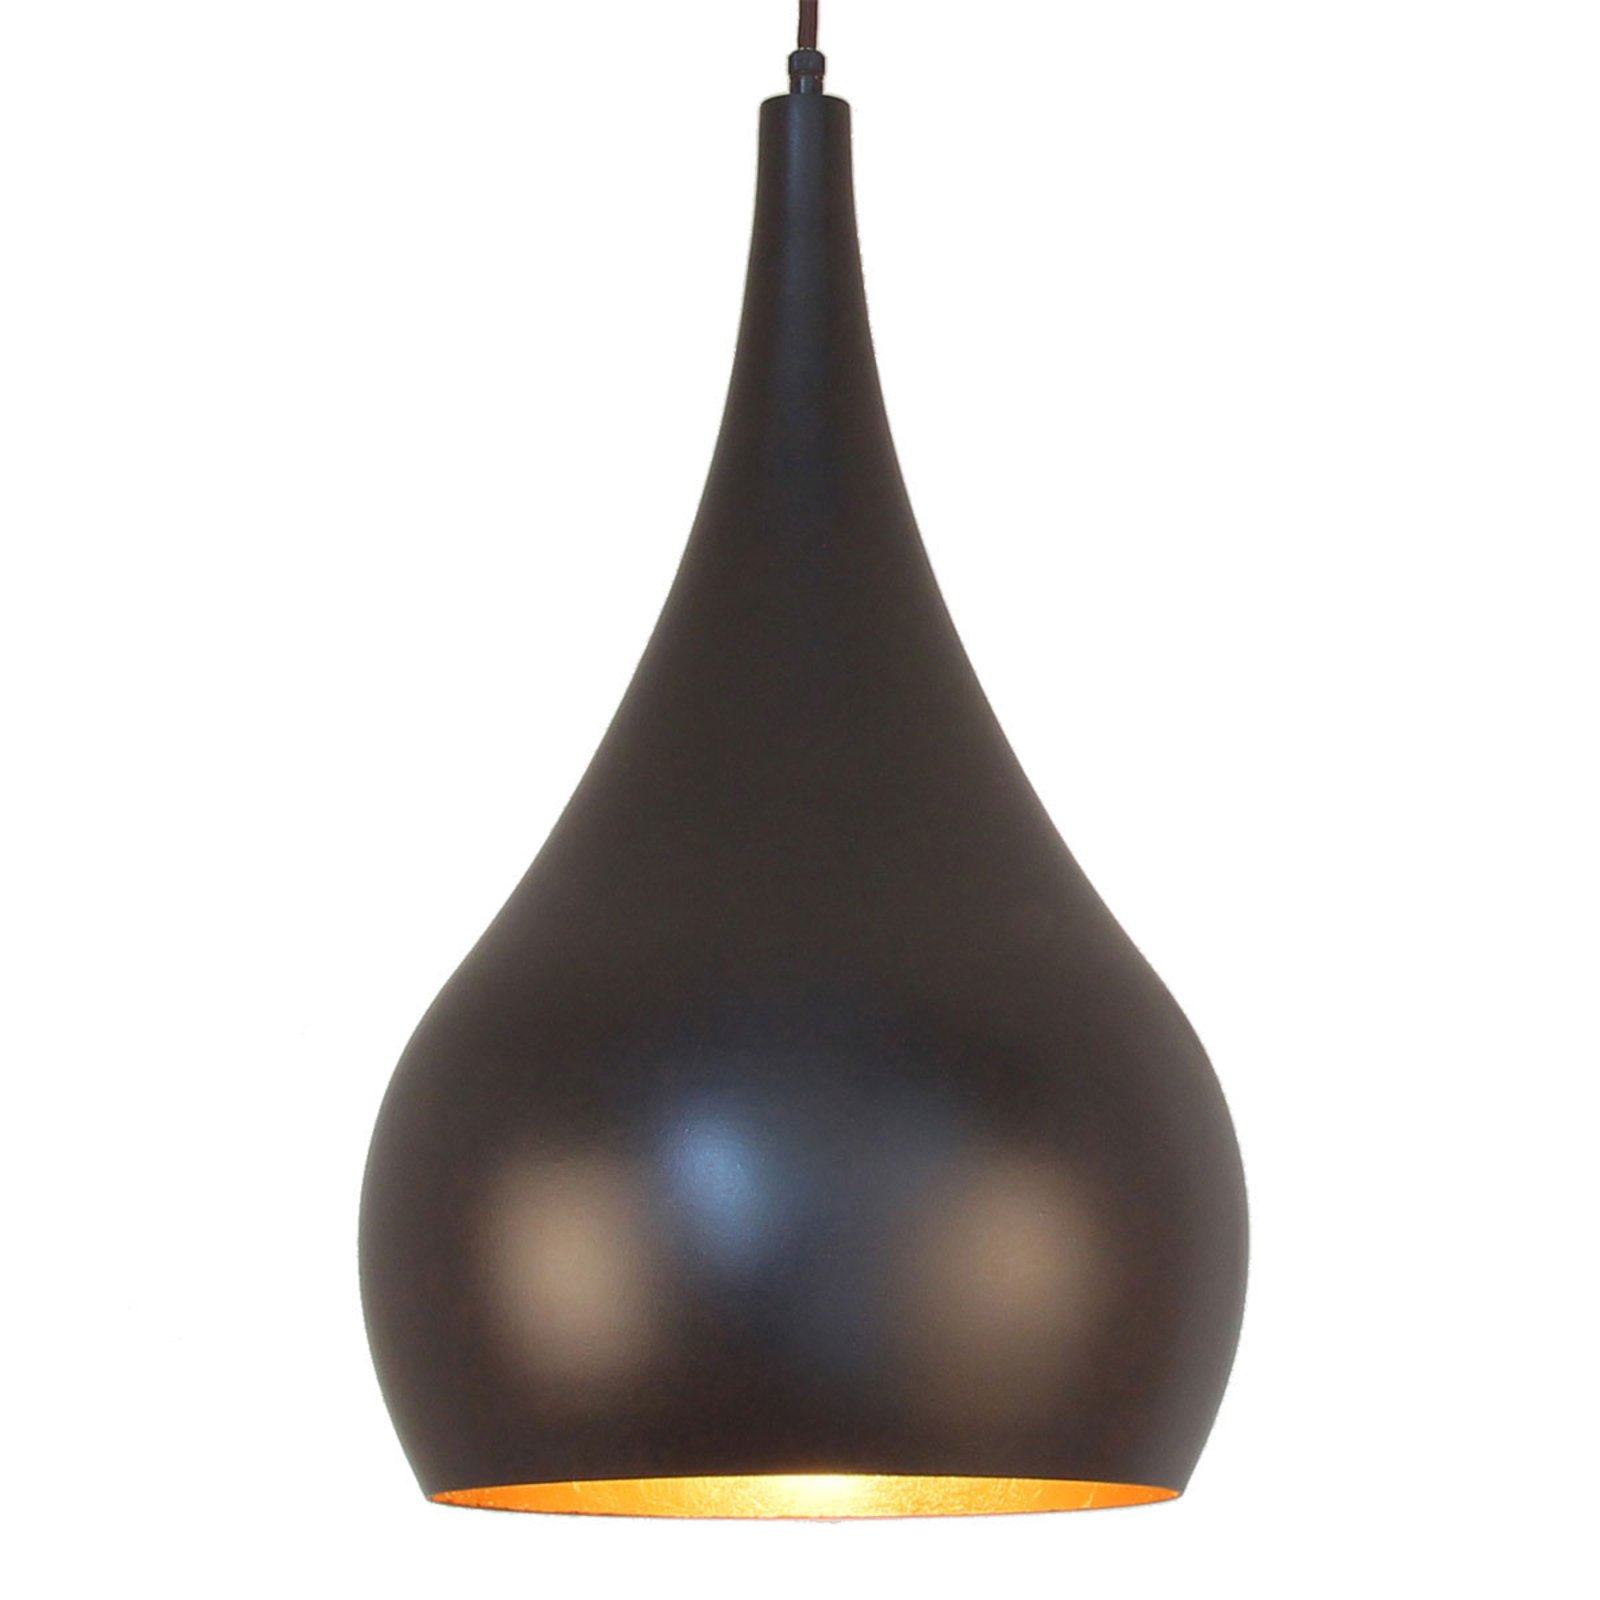 Menzel Solo hængelampe løgformet, brun-sort, 30 cm